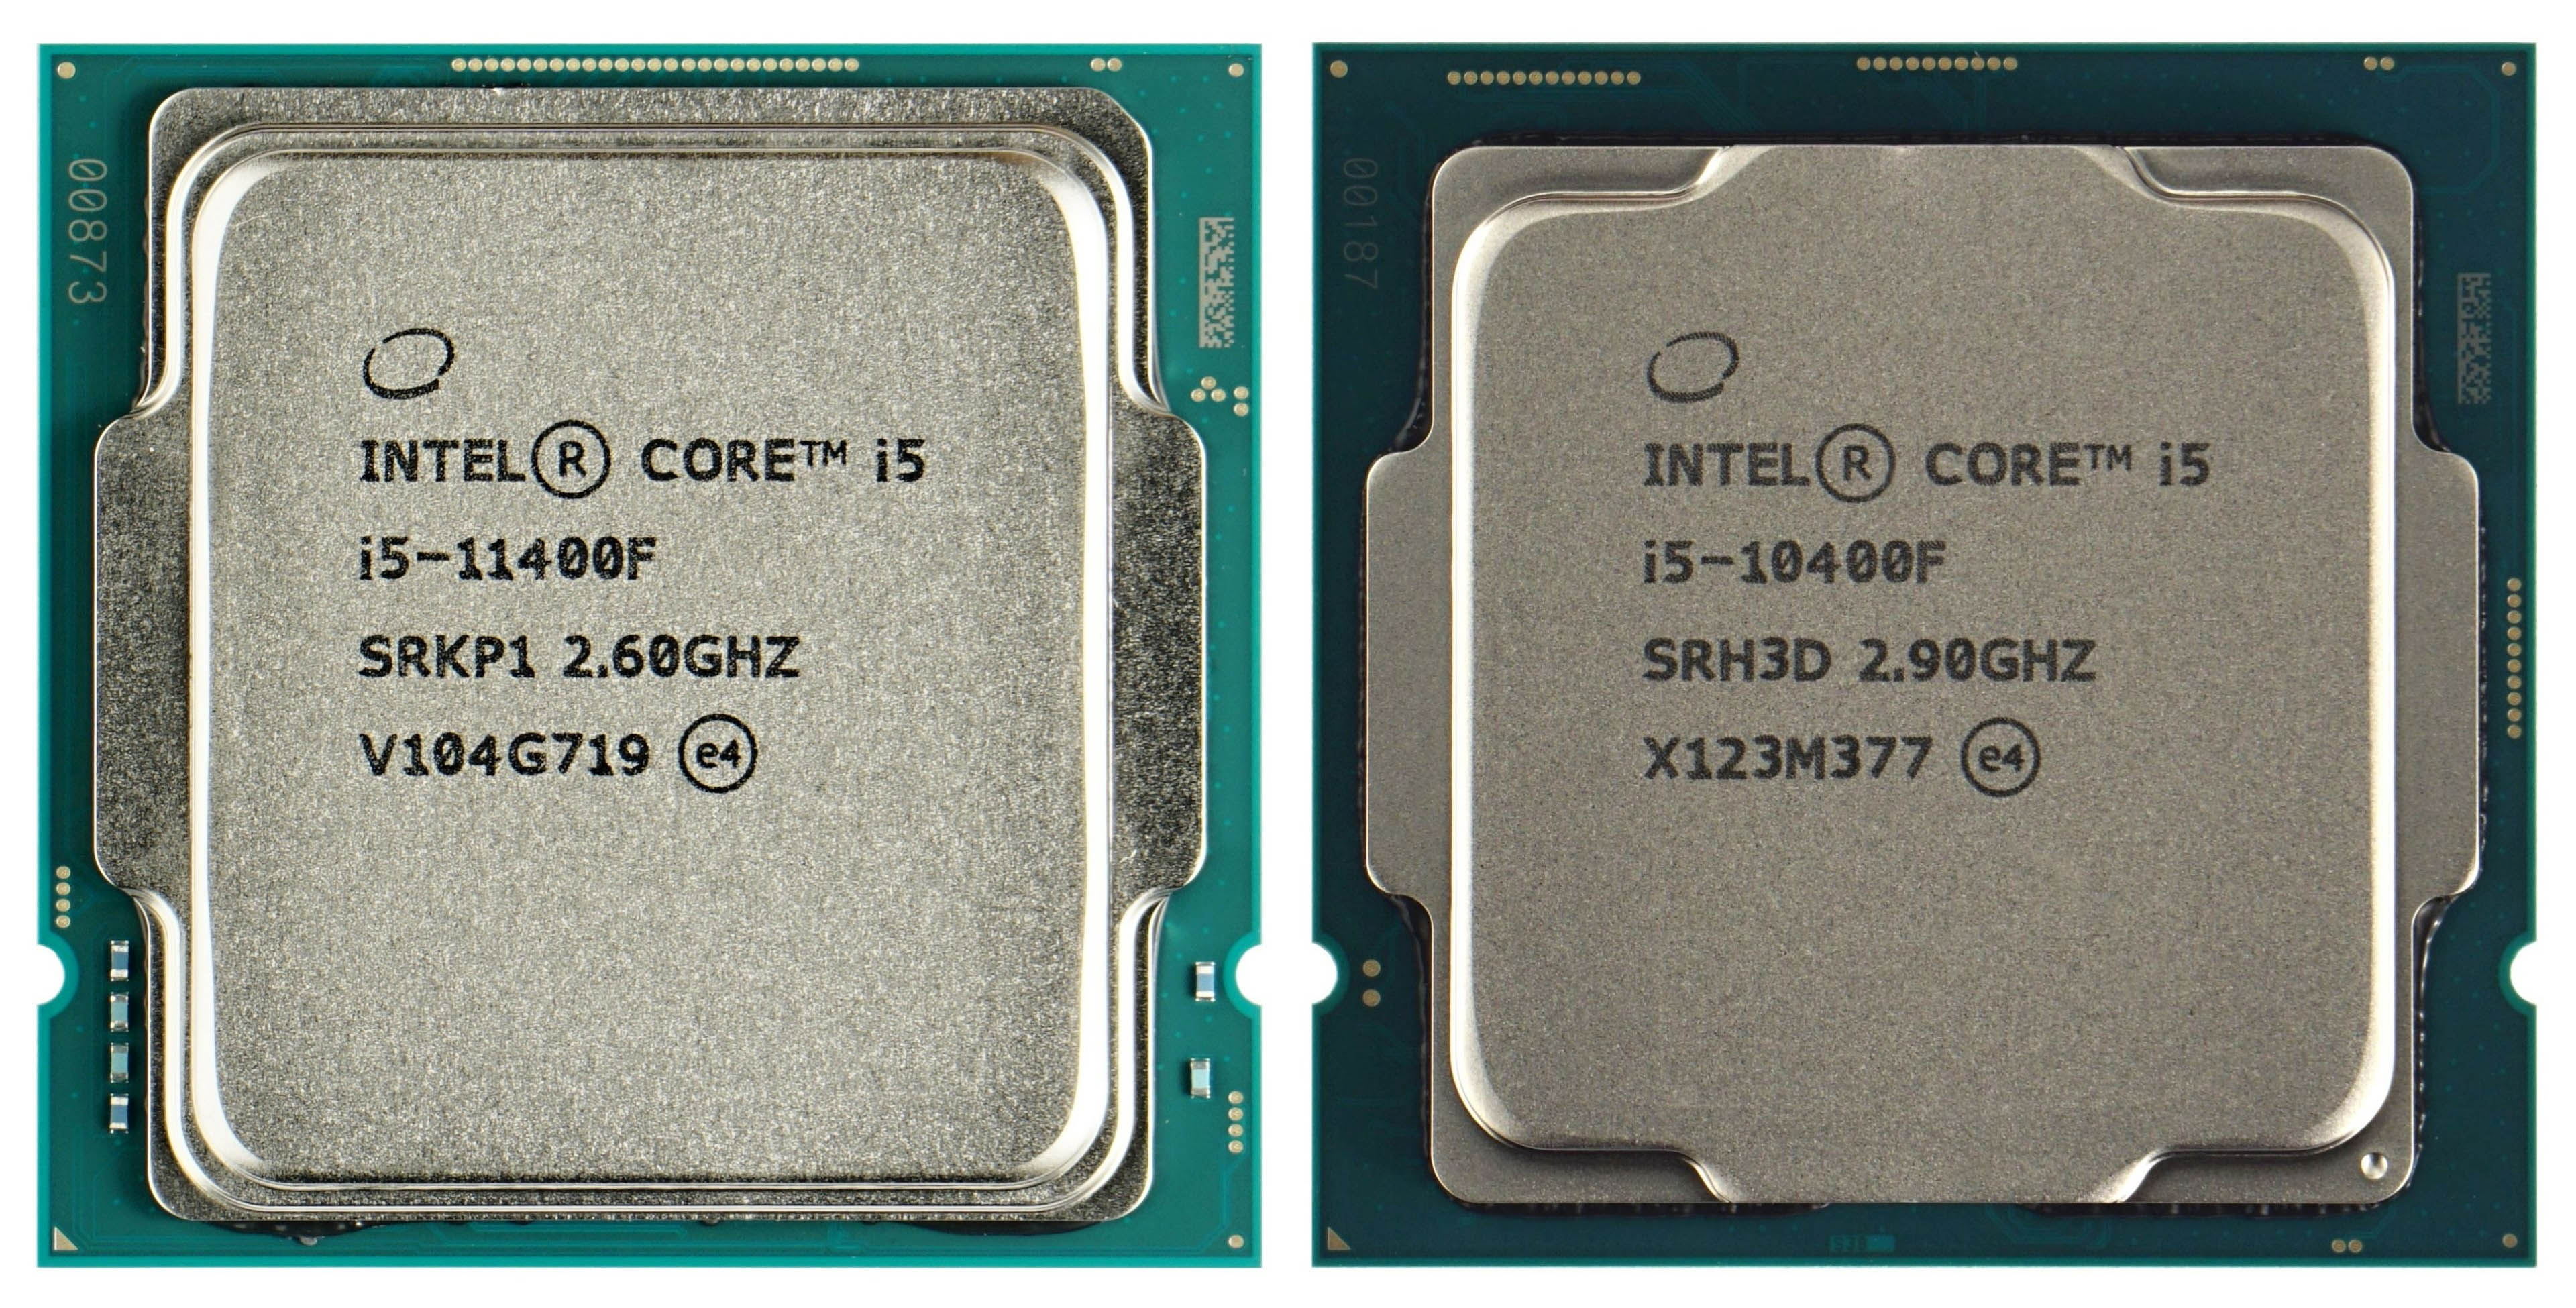 The new (11400F) vs. older (10400F) Intel Core i5 processor 